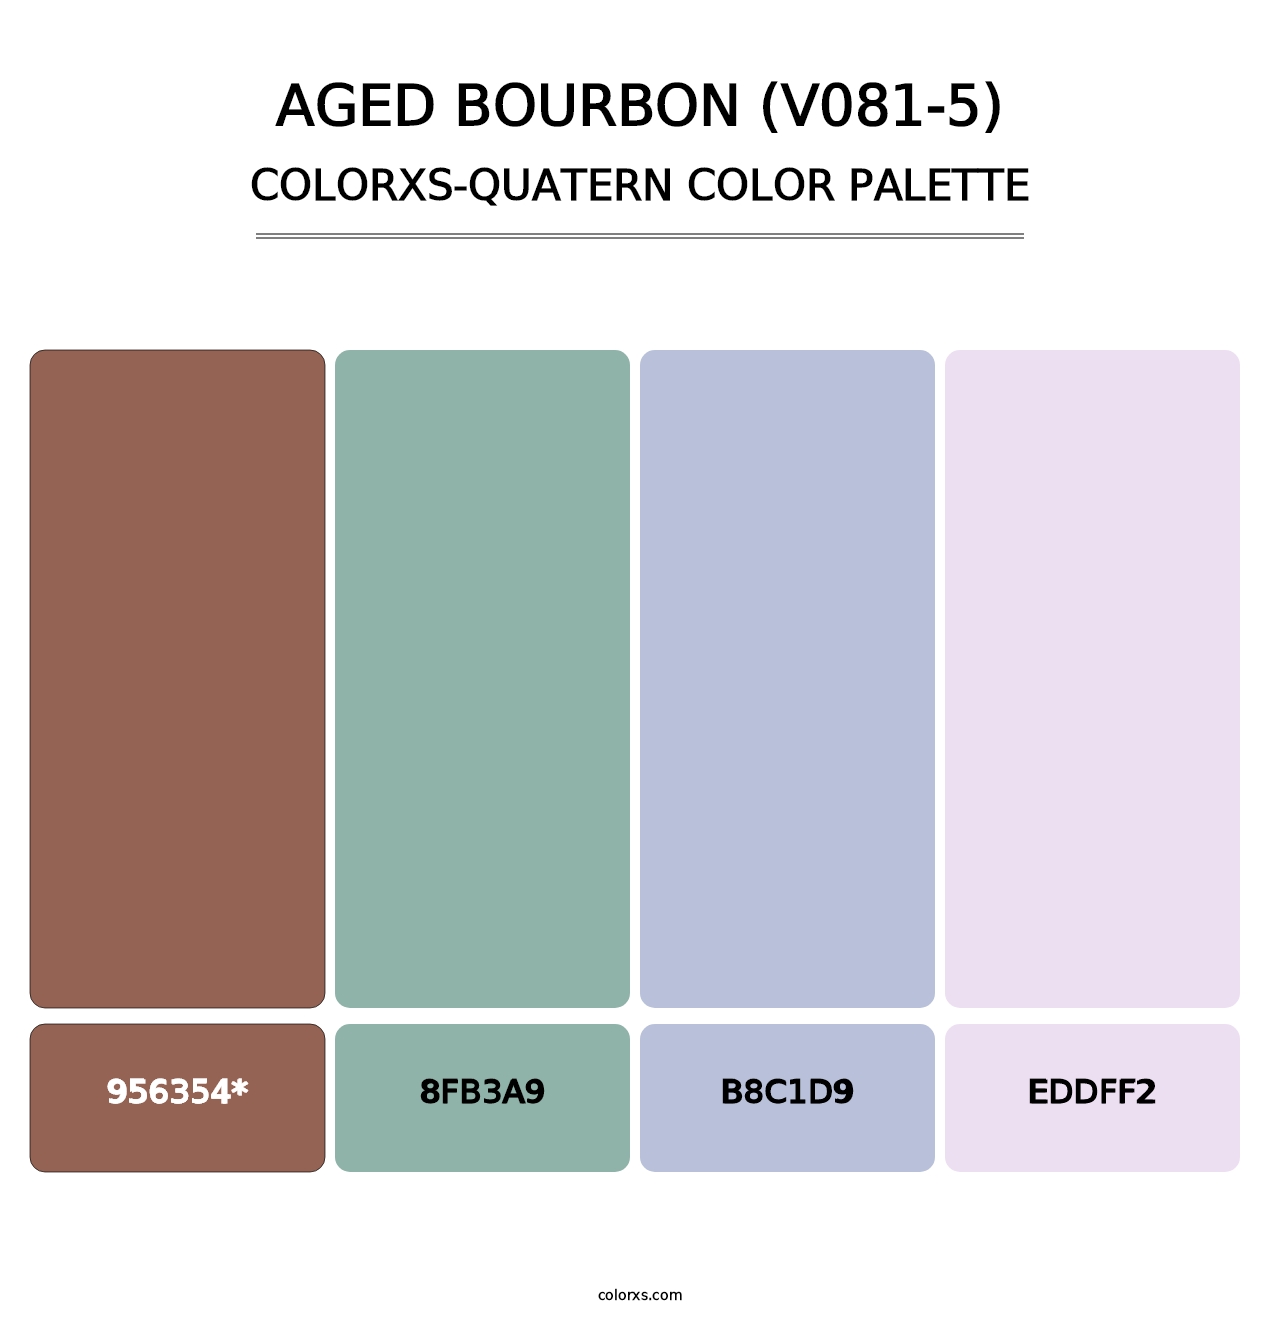 Aged Bourbon (V081-5) - Colorxs Quatern Palette